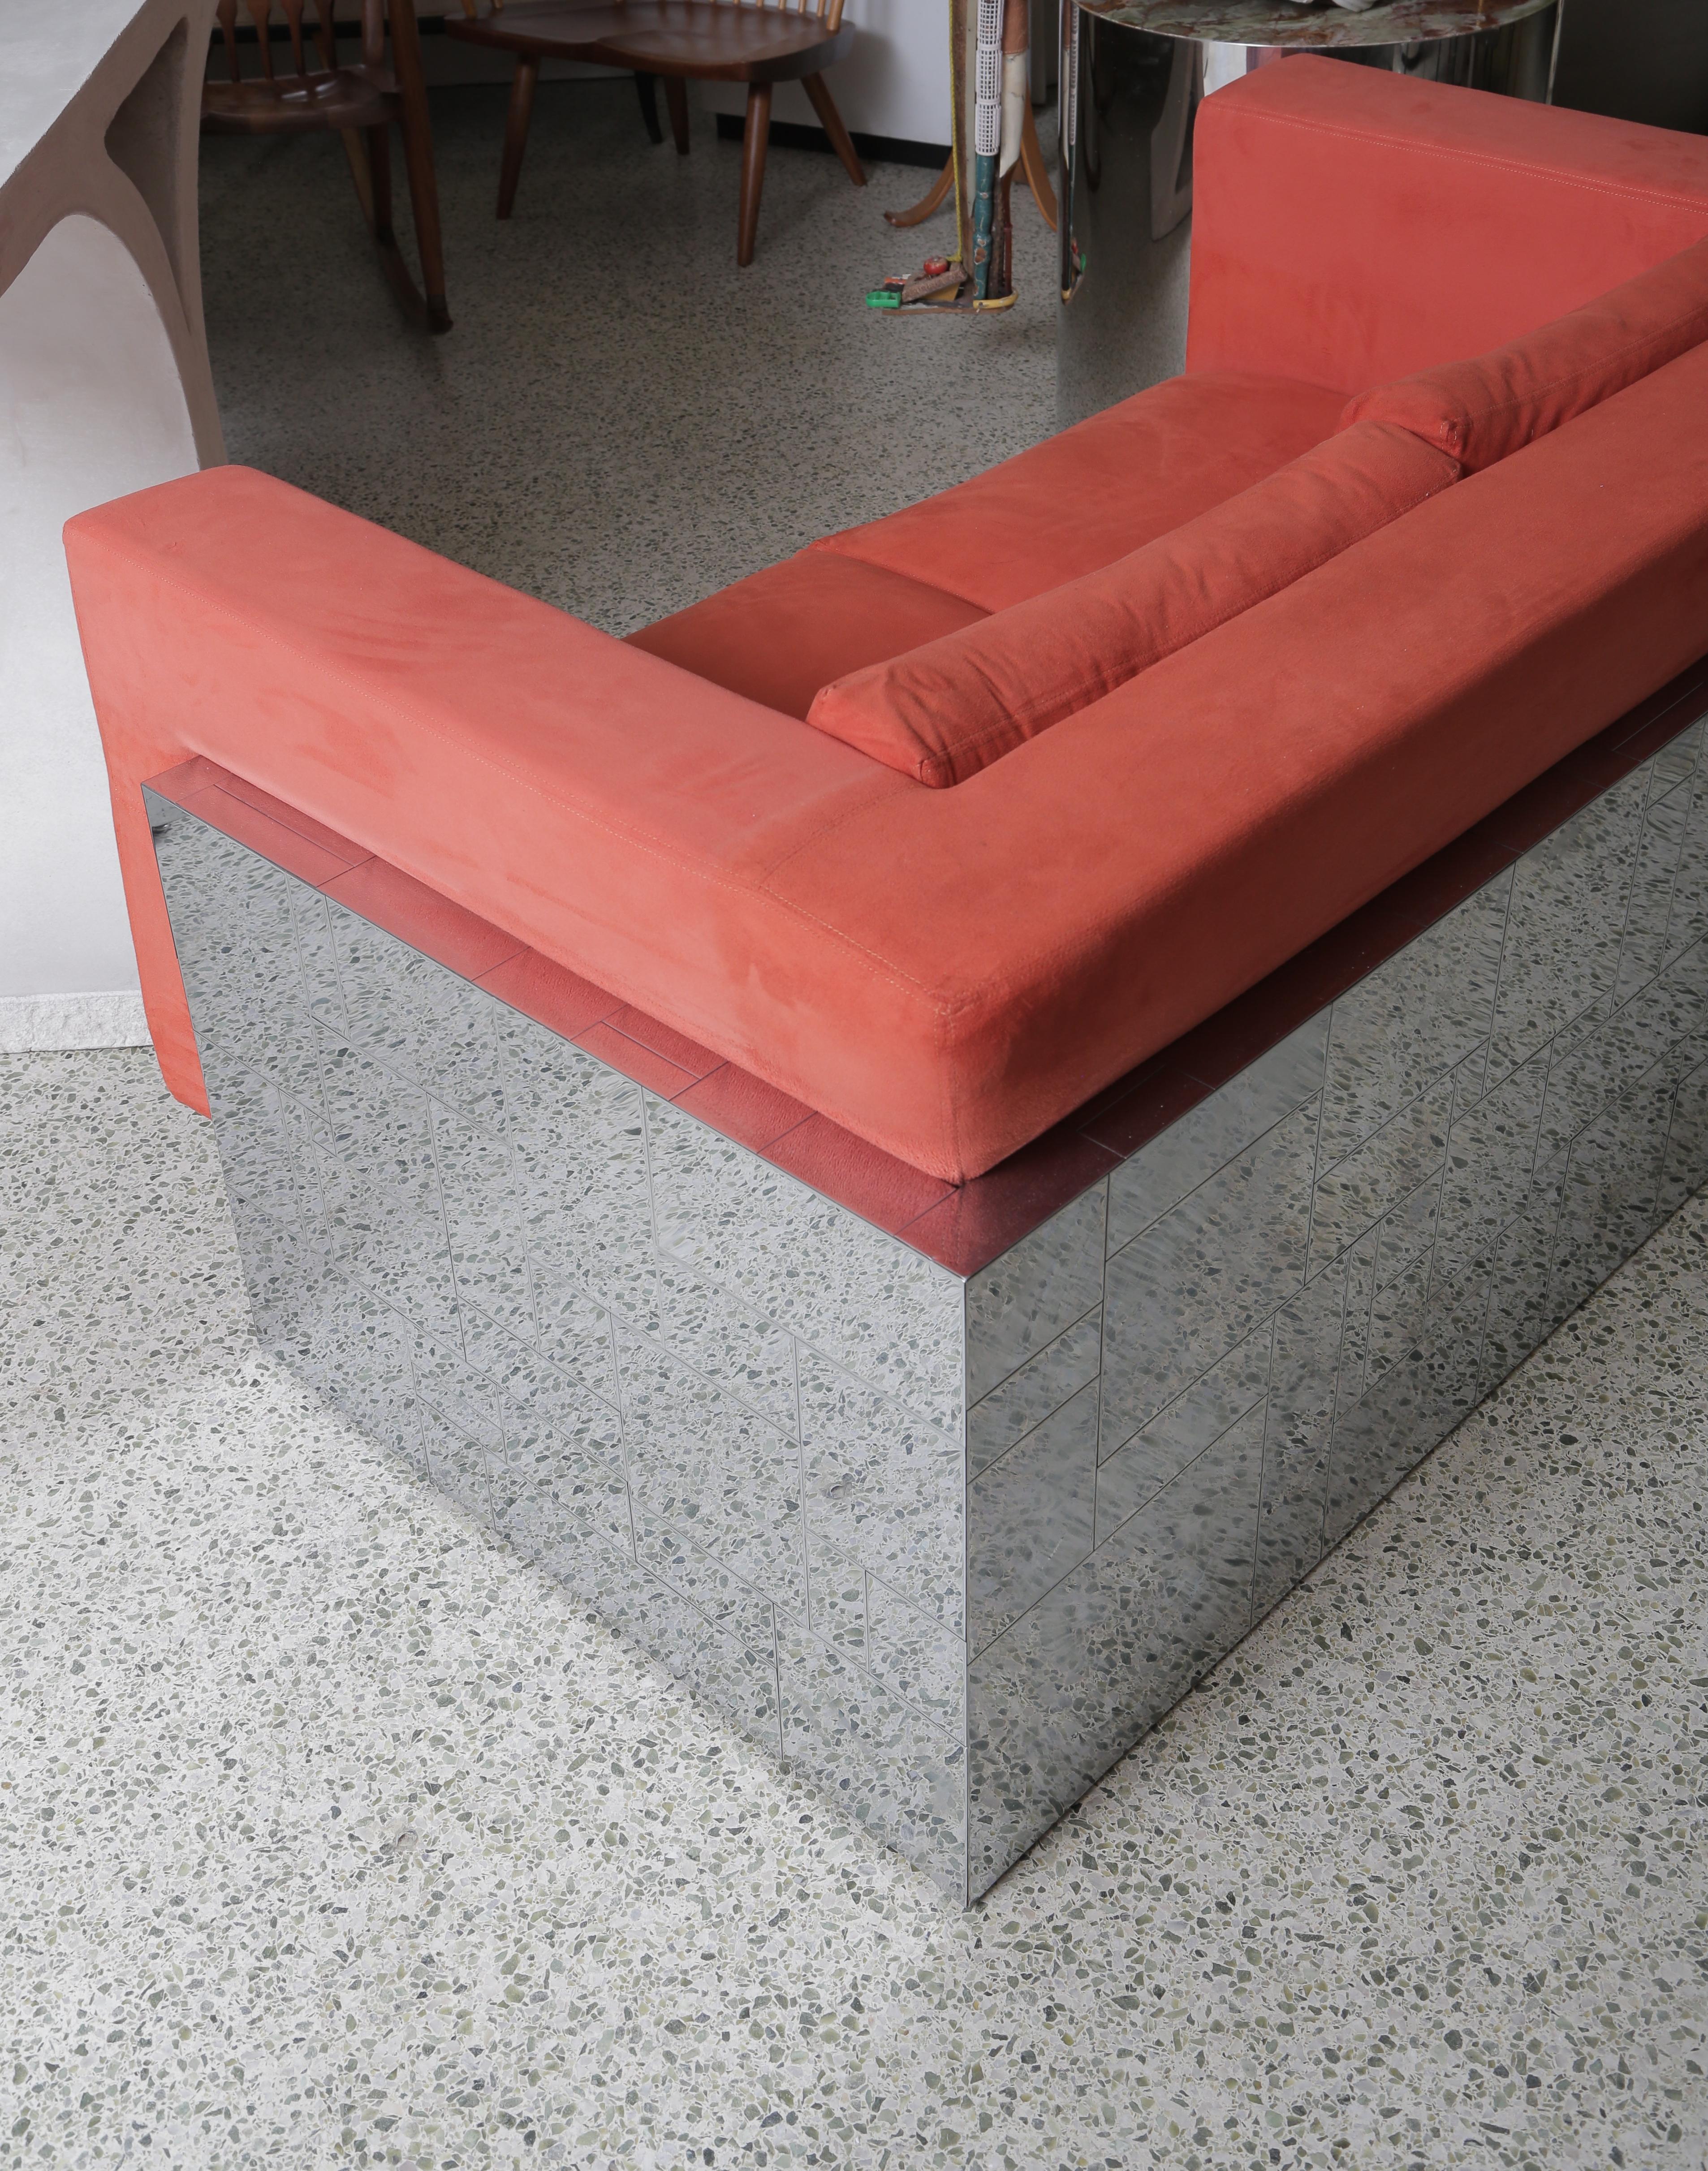 Paul Evans Cityscape Sofa aus der Serie 200.
Hergestellt von Directional Furniture um 1970
Ältere, saubere Neupolsterung in Ultrasuede.